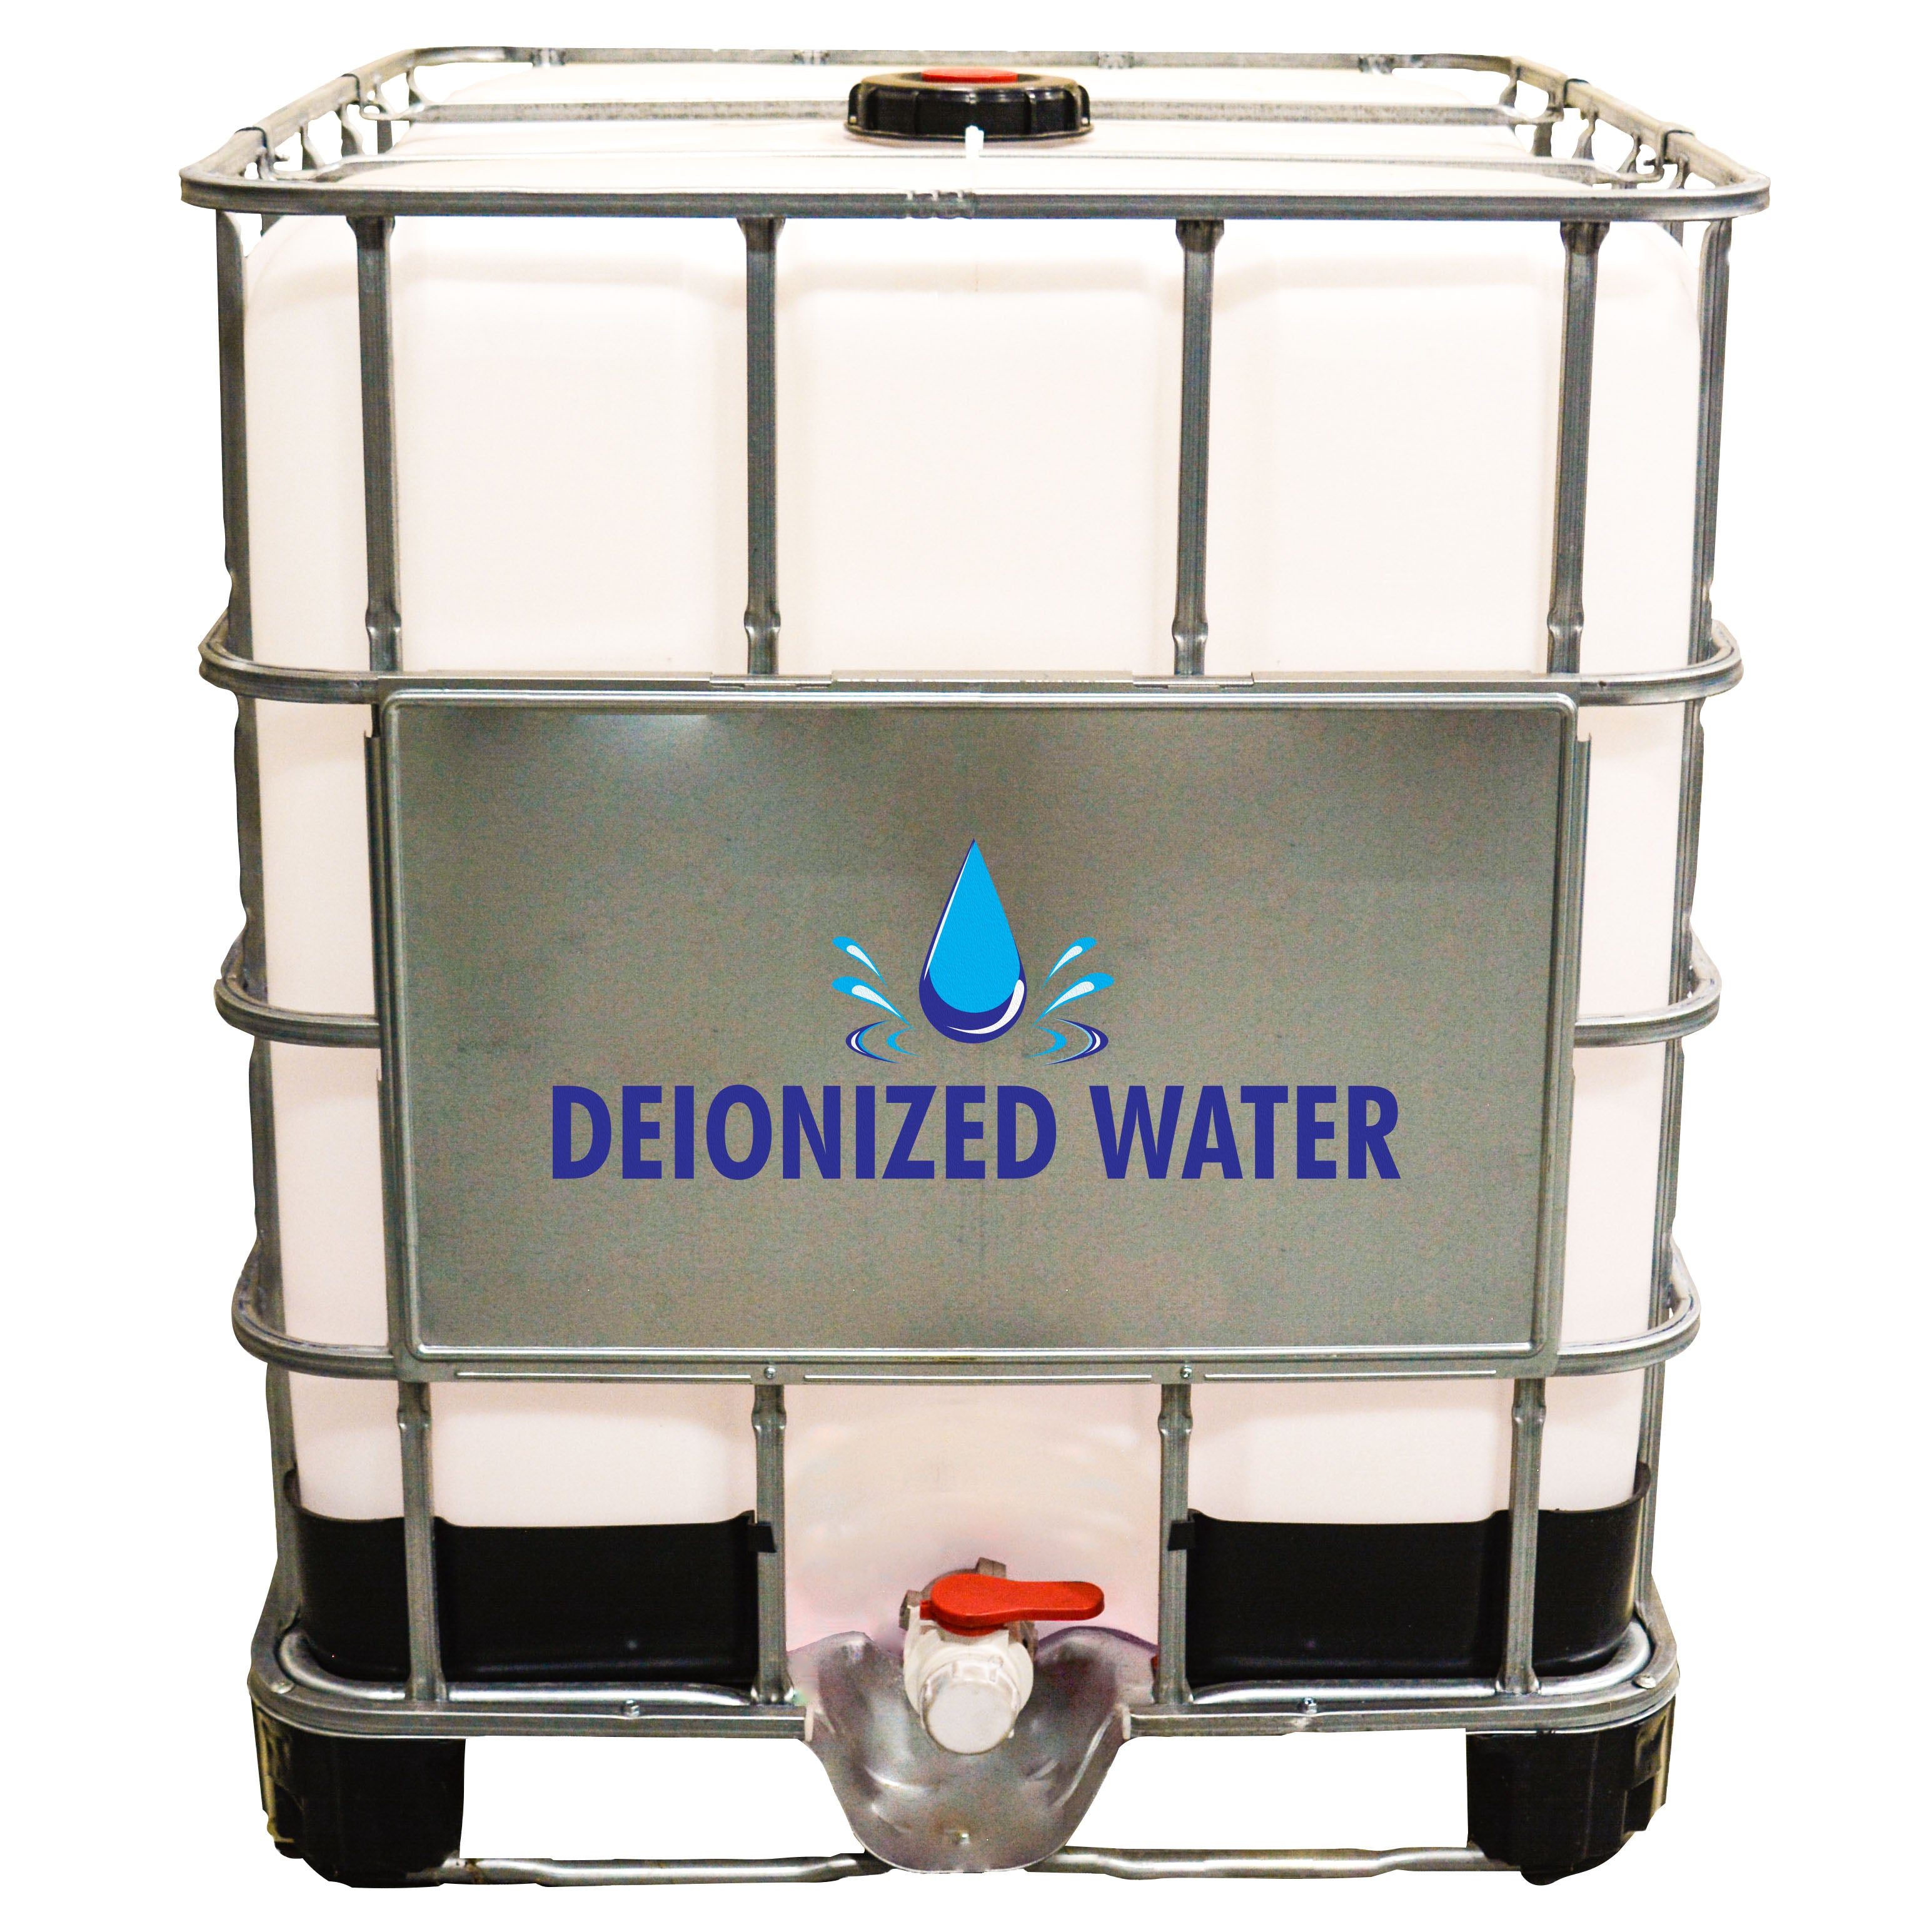 275 gallon tote of deionized water (di water).